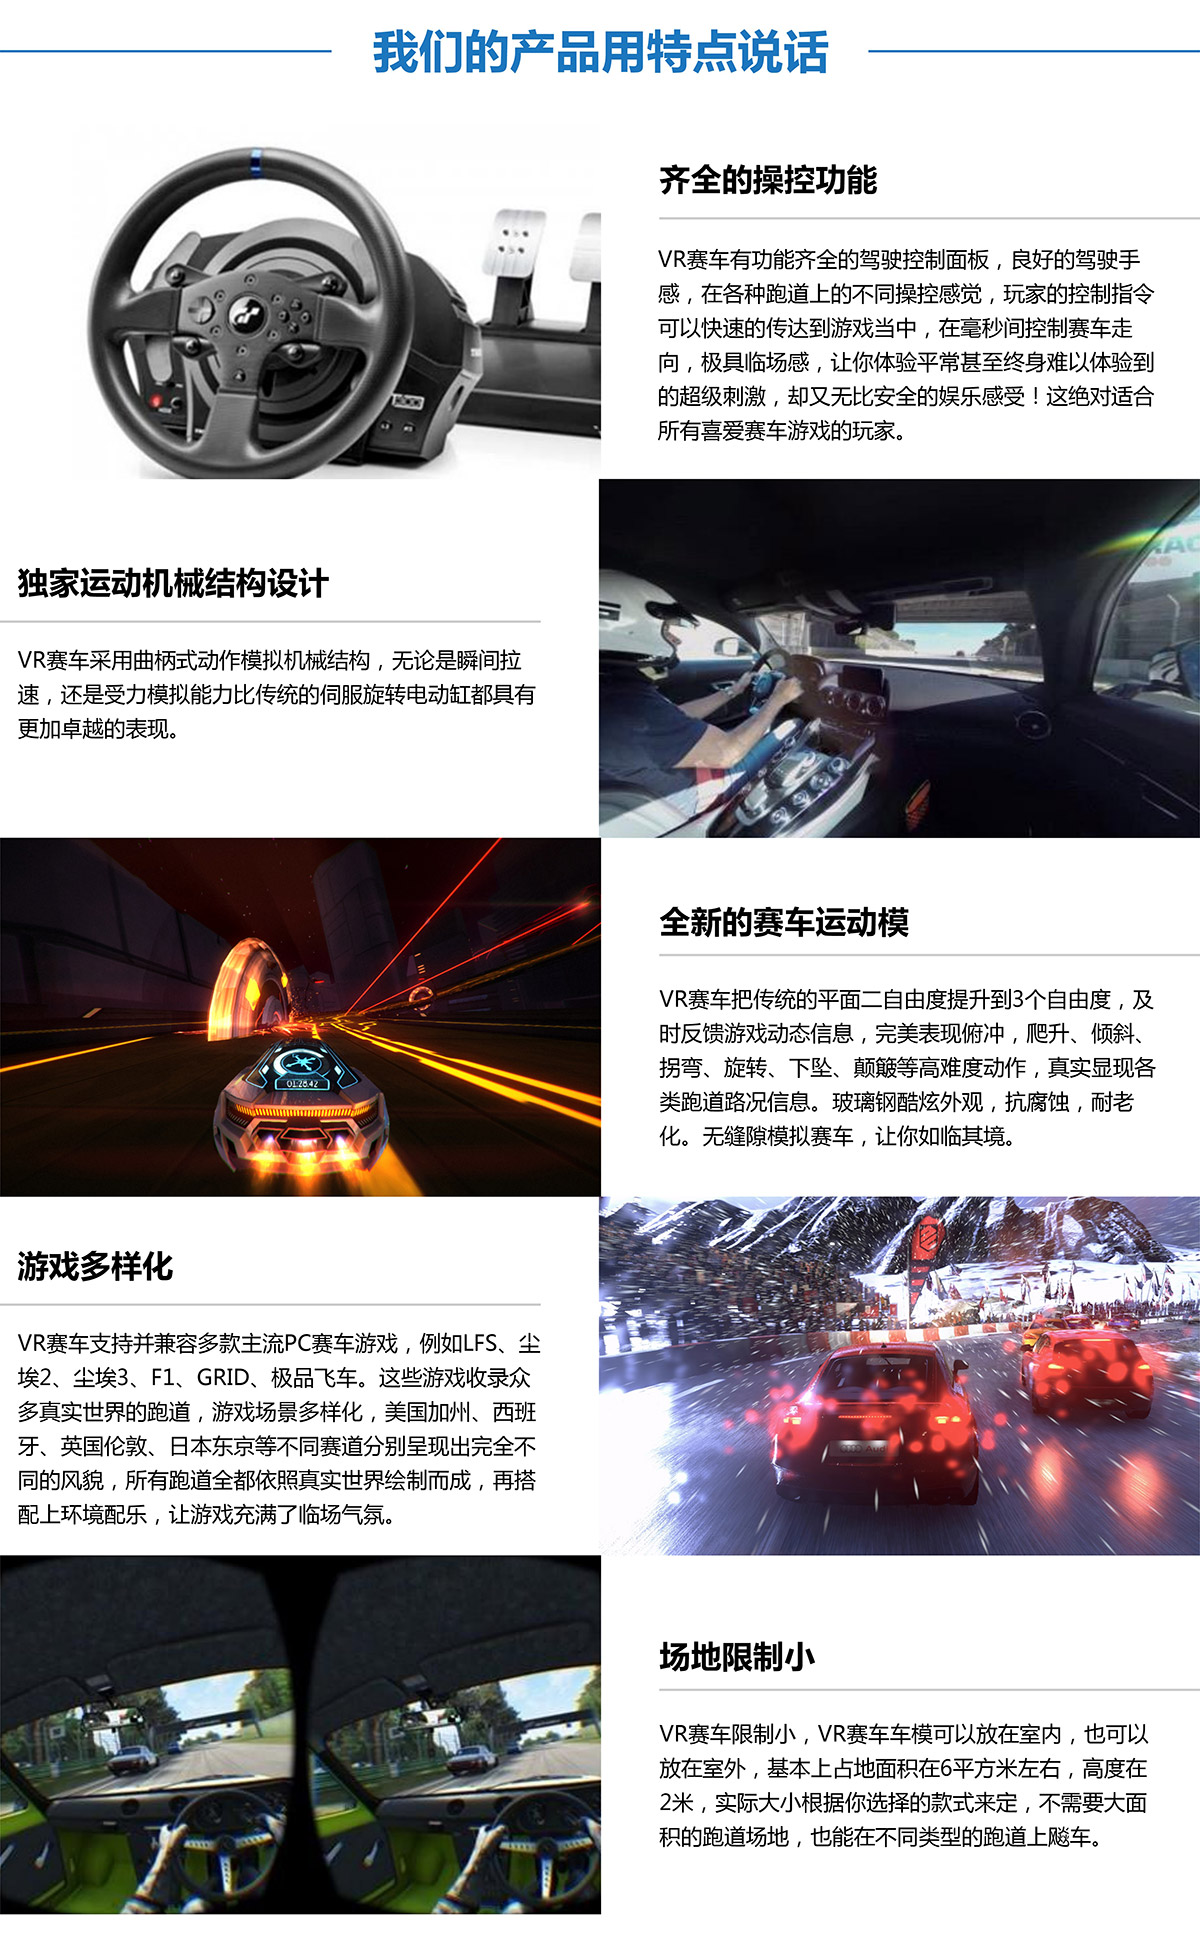 05-虚拟VR赛车产品用特点说话.jpg